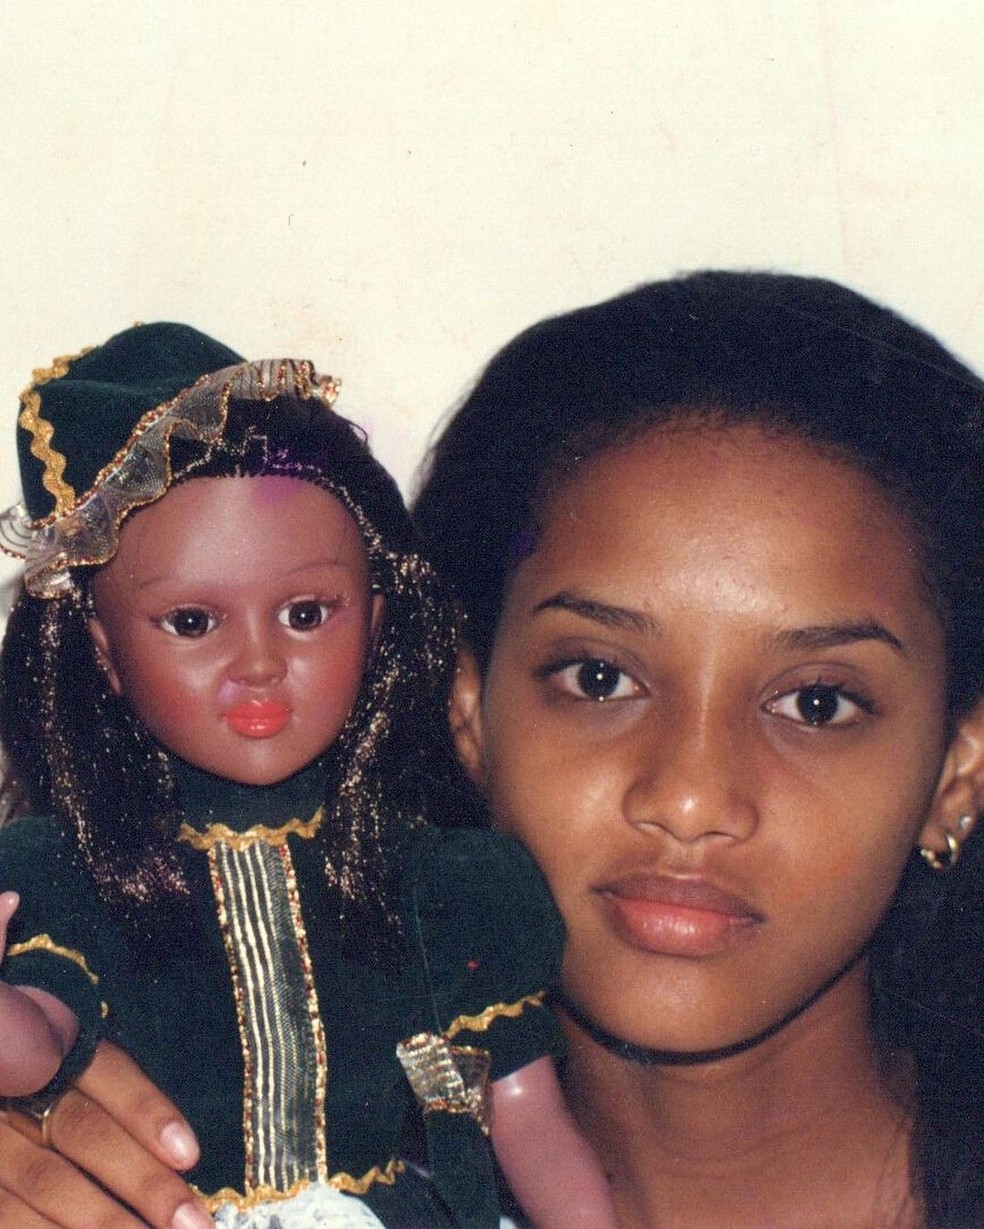 Taís Araujo resgata comercial antigo de sua boneca: 'Não foi um surto coletivo' — Foto: Instagram